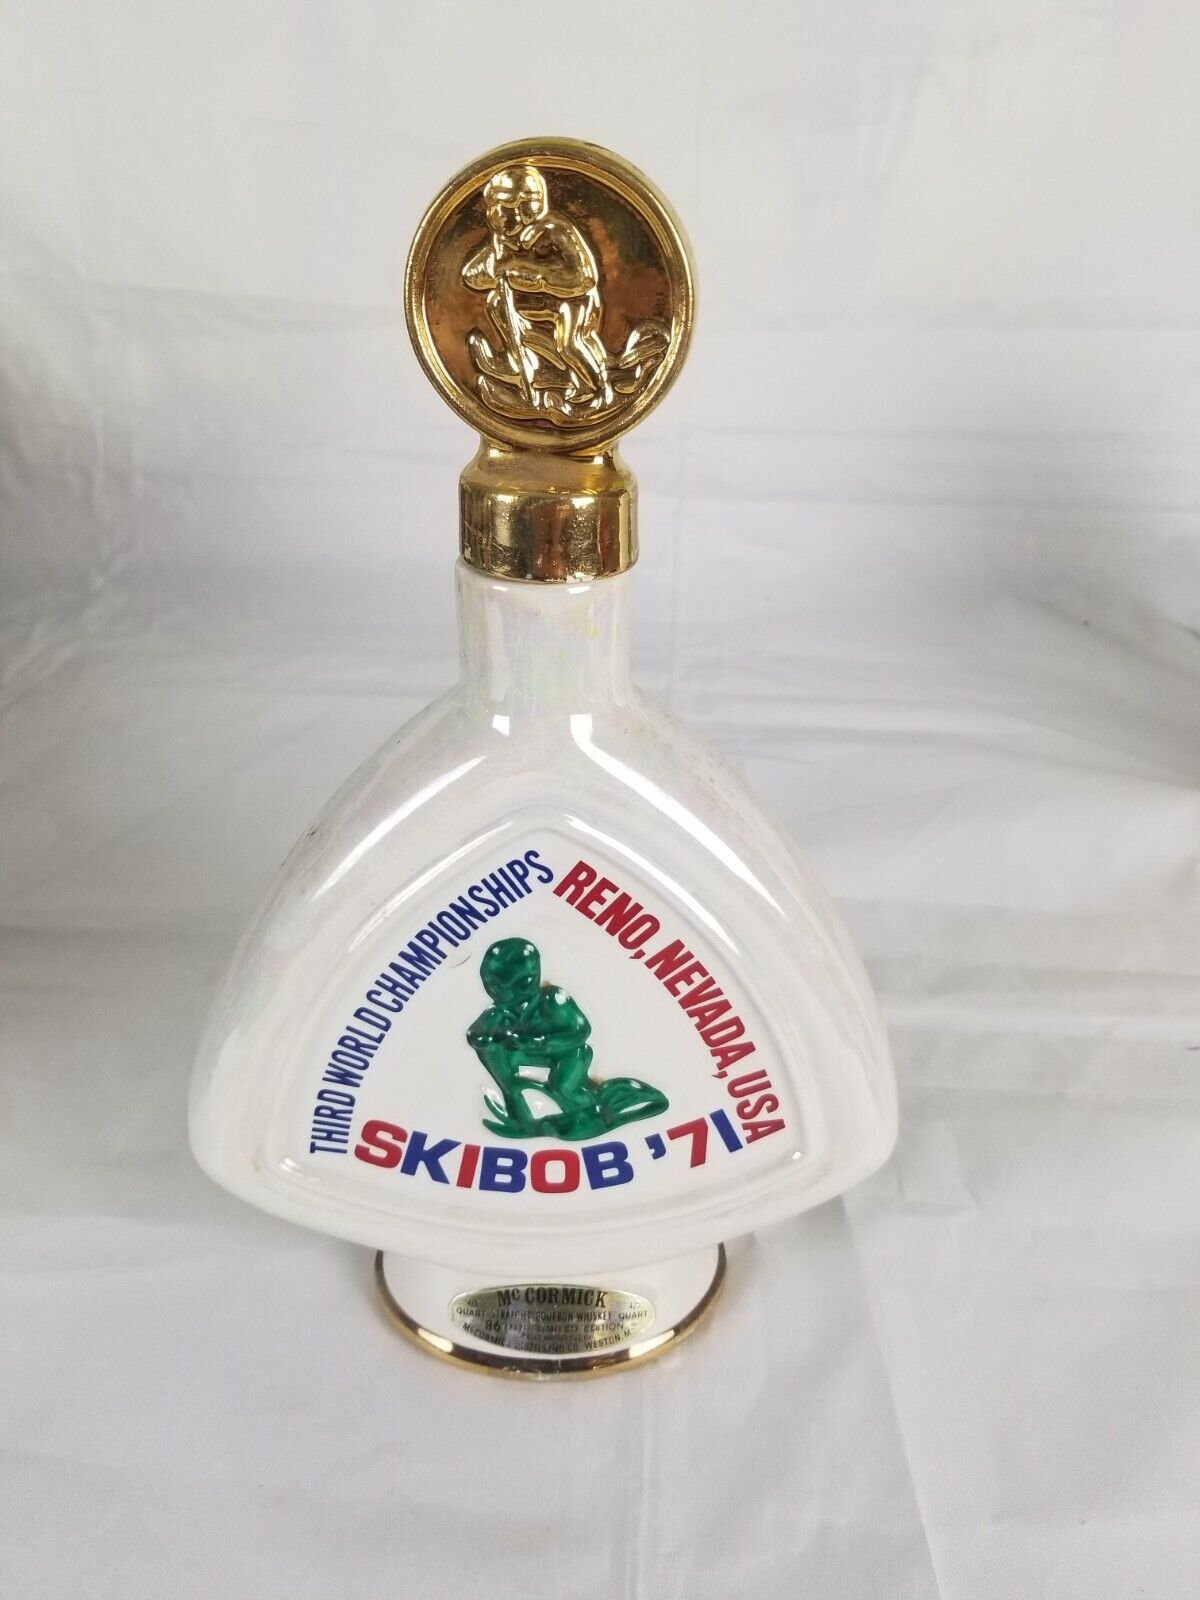 Skibob '71 Third World ChampiomShips Whiskey Bottle